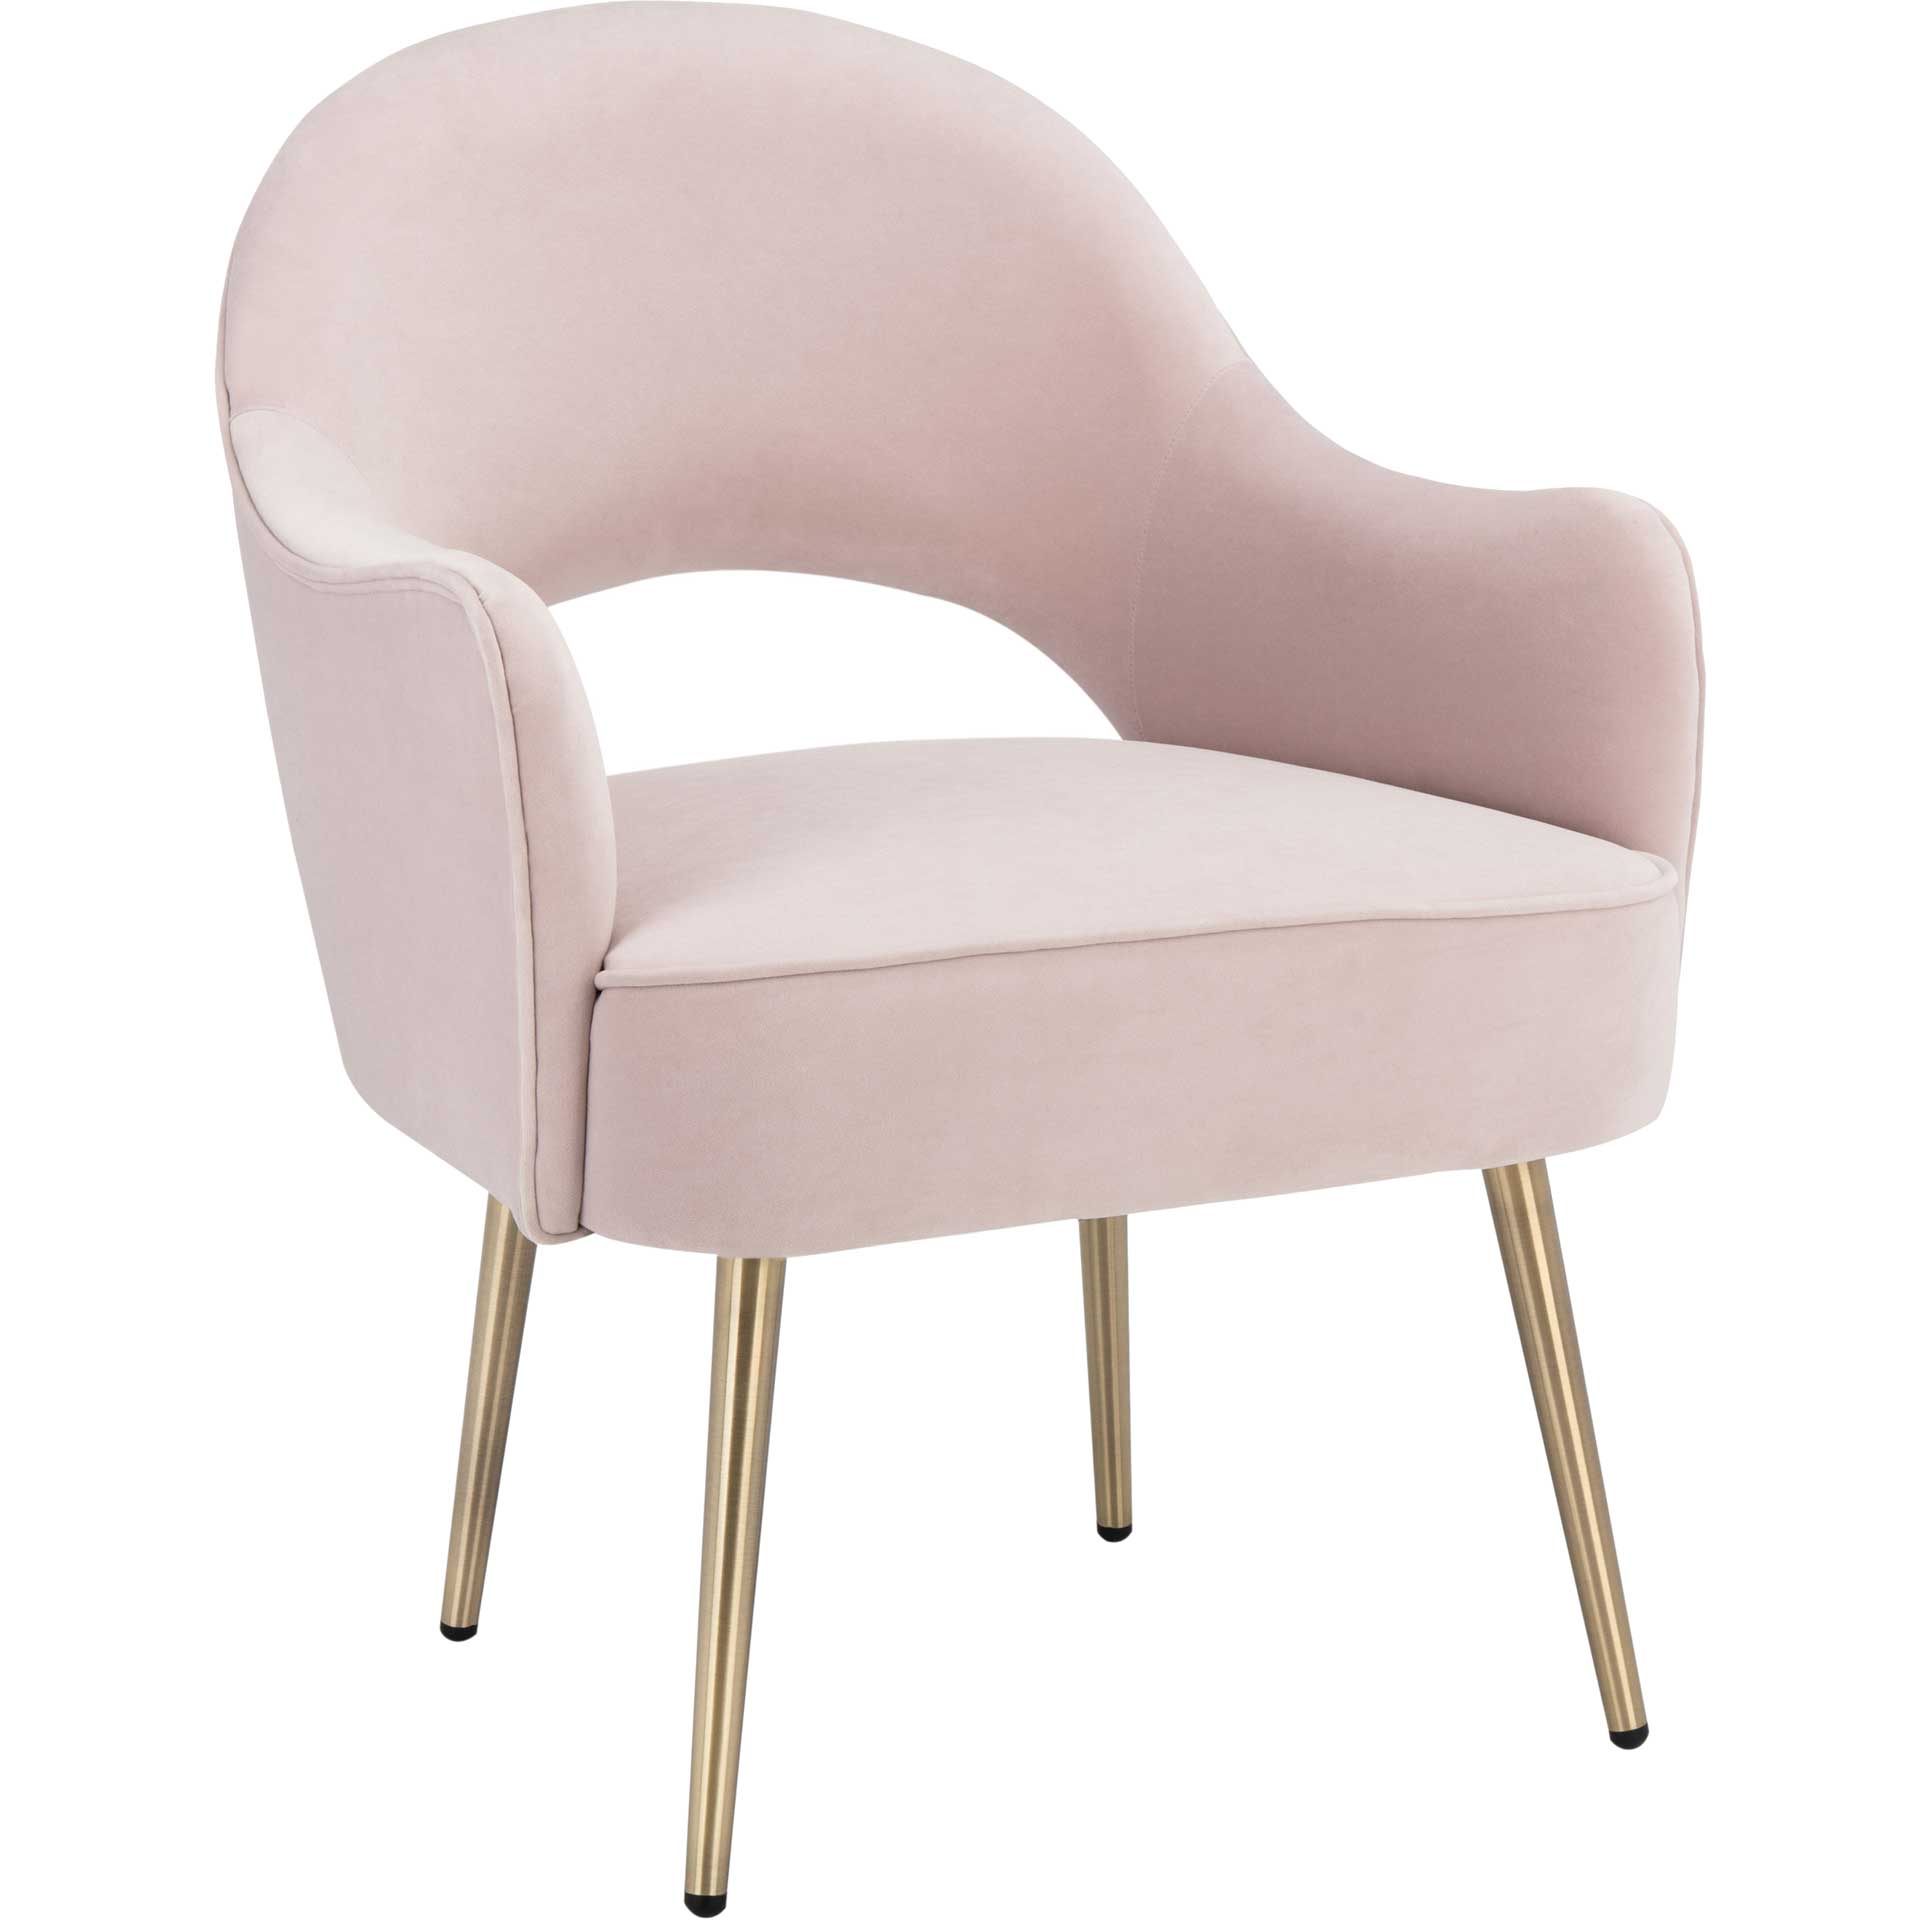 Dublin Accent Chair Light Pink